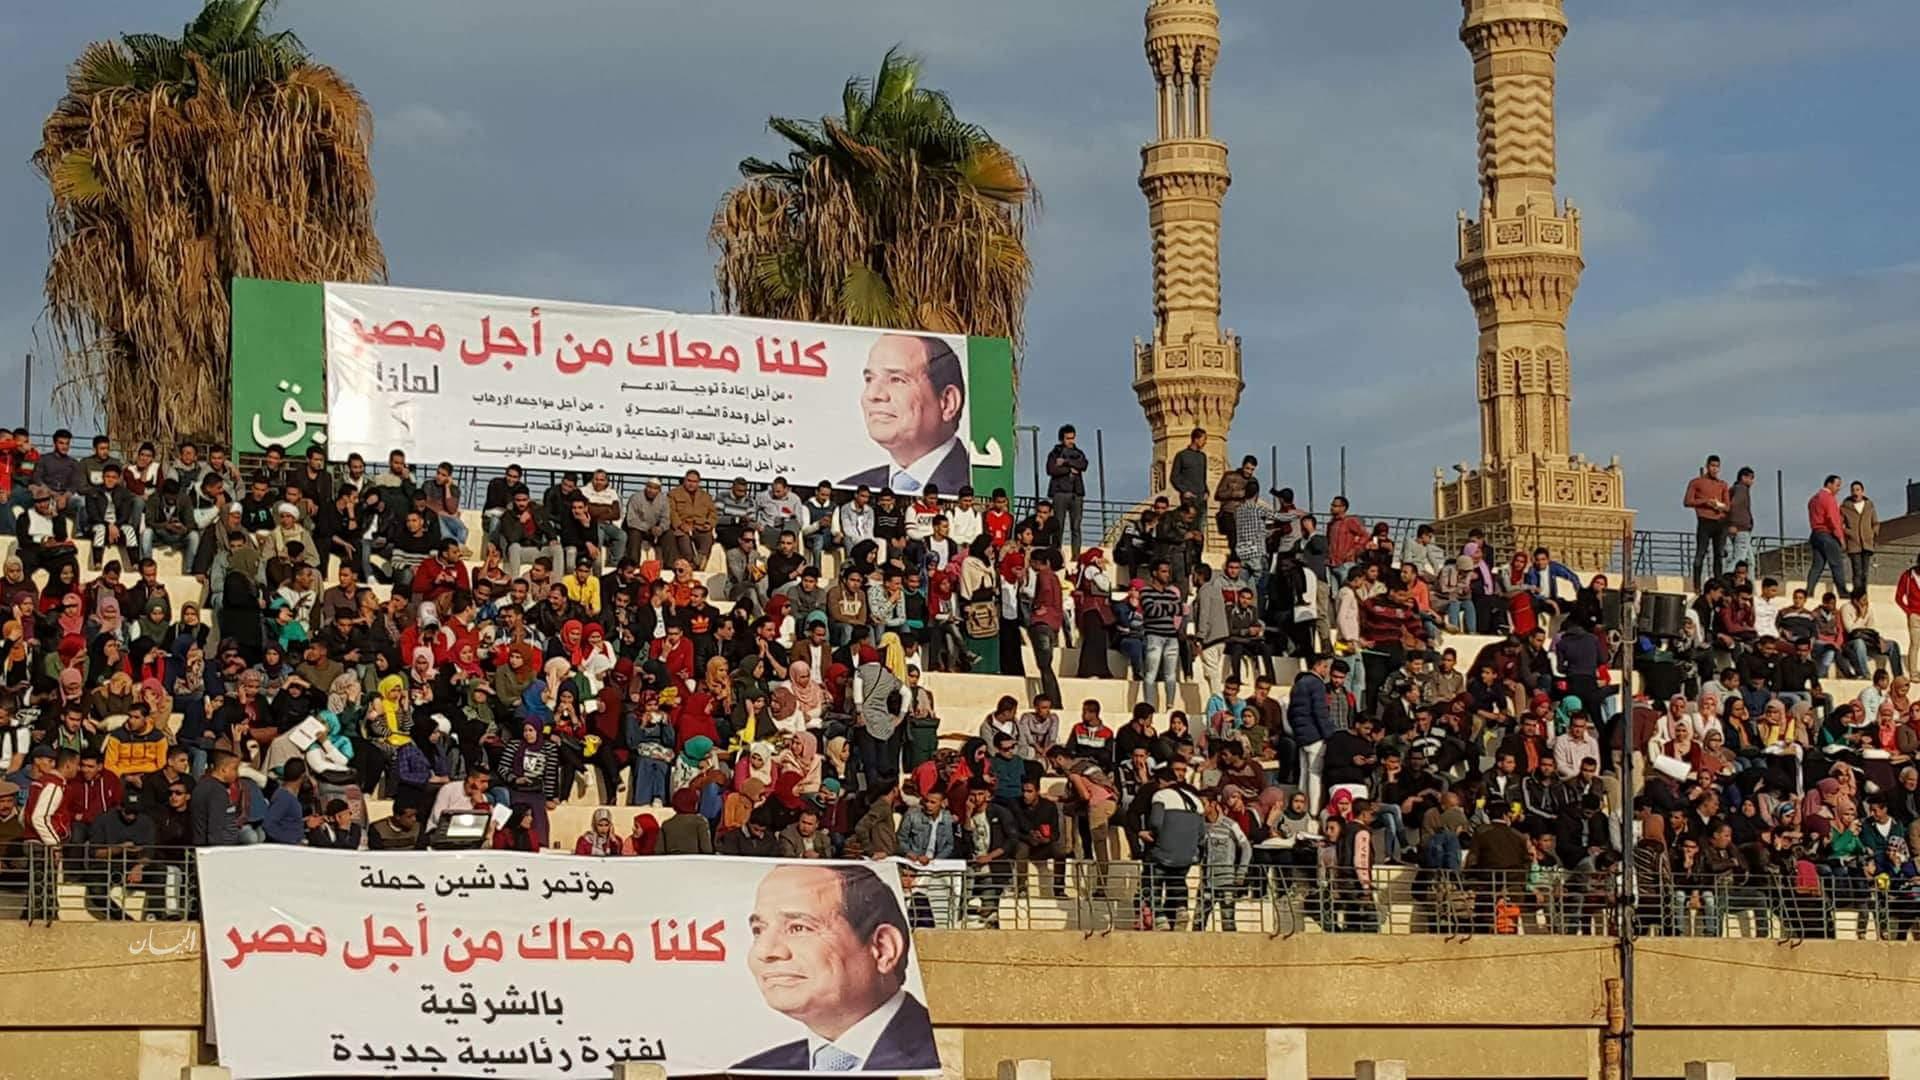   «كلنا معاك» في 18 محافظة خلال 24 ساعة.. «من أجل مصر» دعم الرئيس لفترة رئاسية ثانية